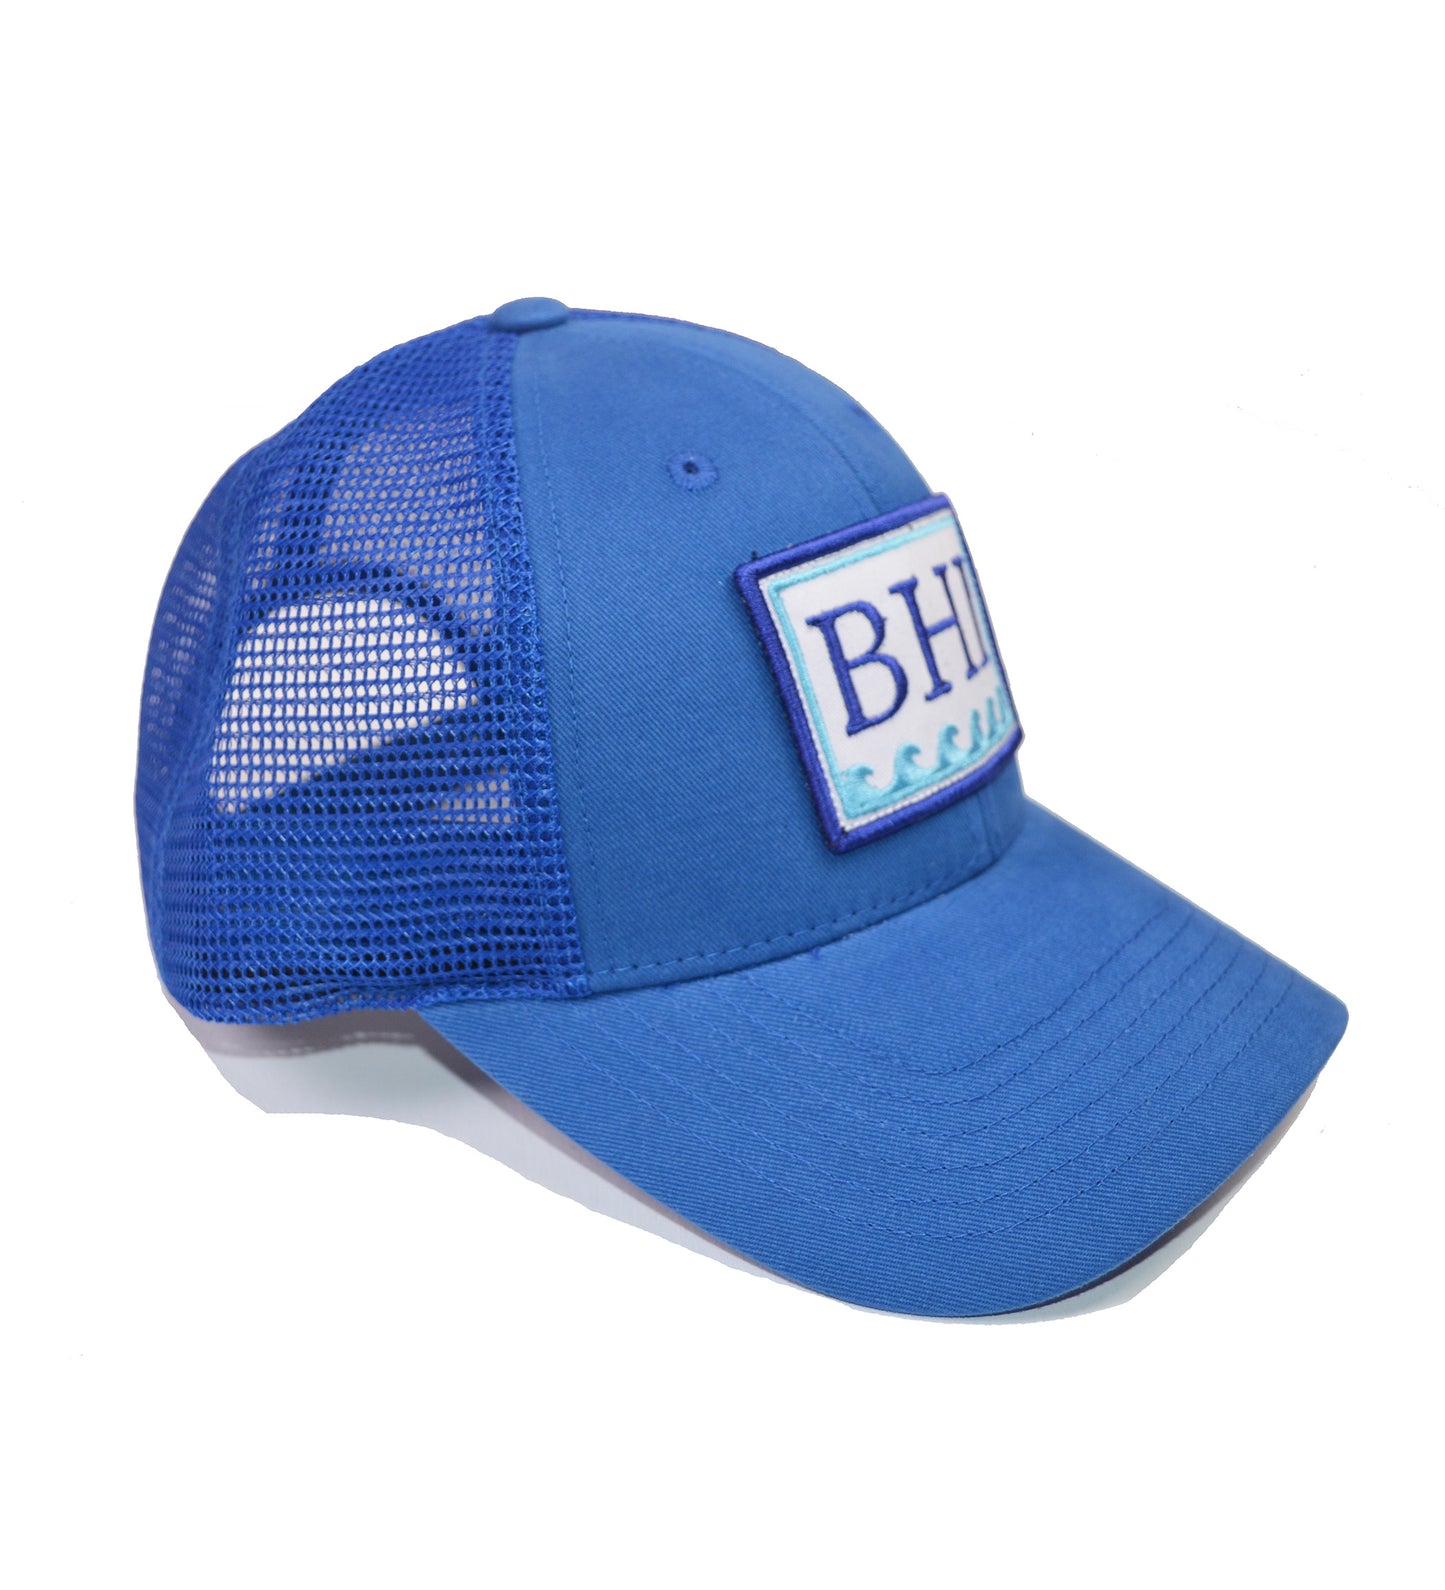 BHI Trucker Hat - Royal Blue